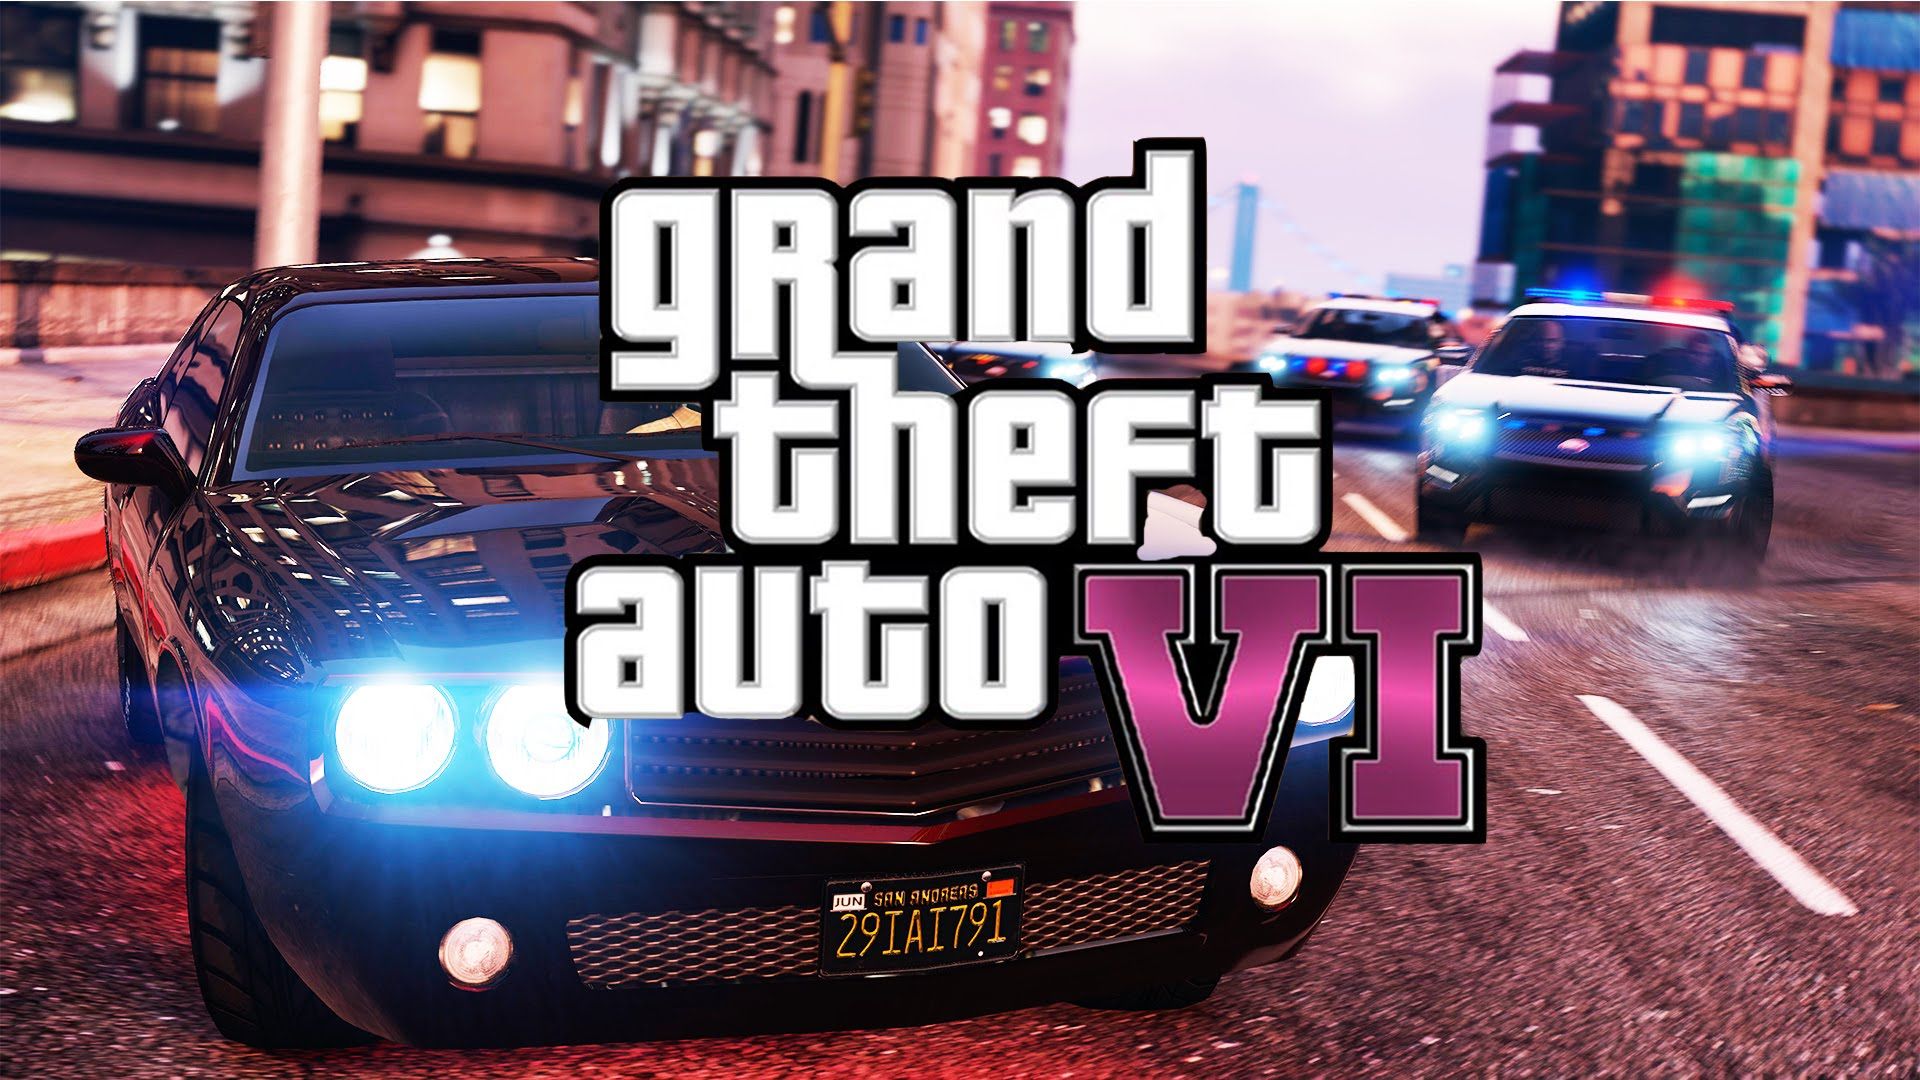 “حملها الآن” gta 6.. موعد نزول جاتا 6 وفق آخر تسريبات Grand Theft Auto 6 من الموقع الرسمي Rockstar Games